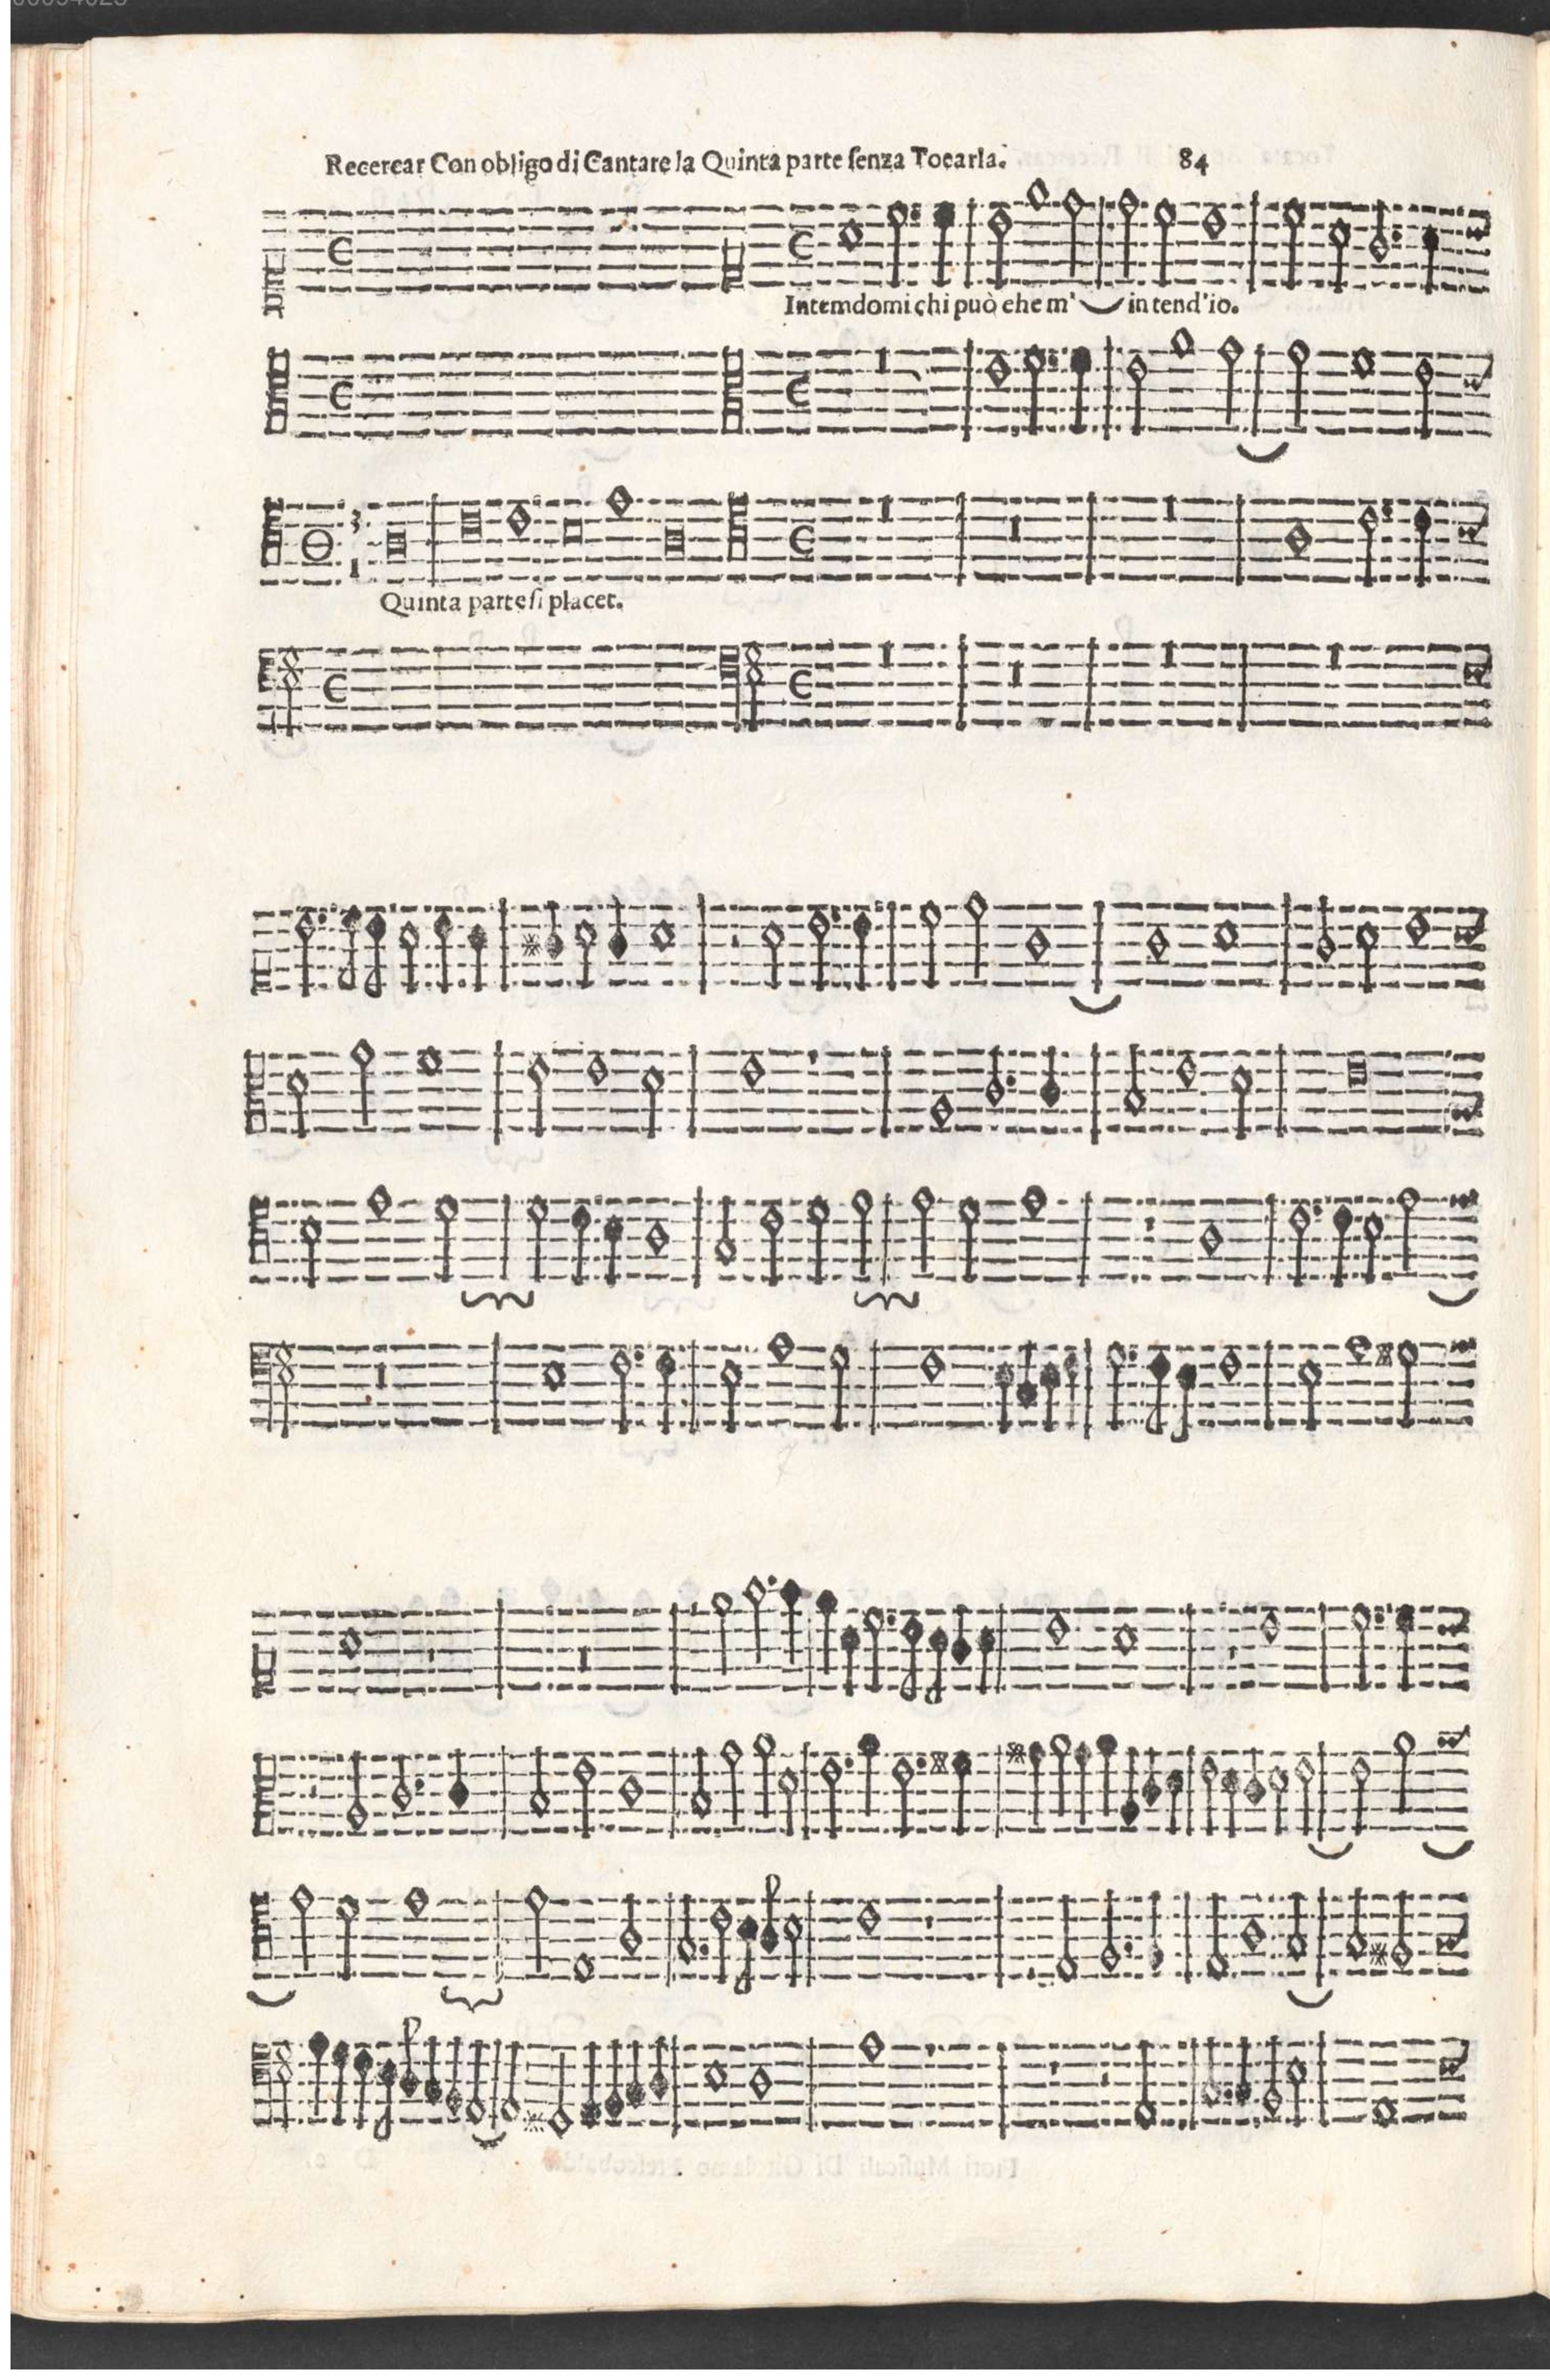 Girolamo Frescobaldi, Fiori musicali (1635), Ricercar con obbligo di cantare la quinta parte senza toccarla